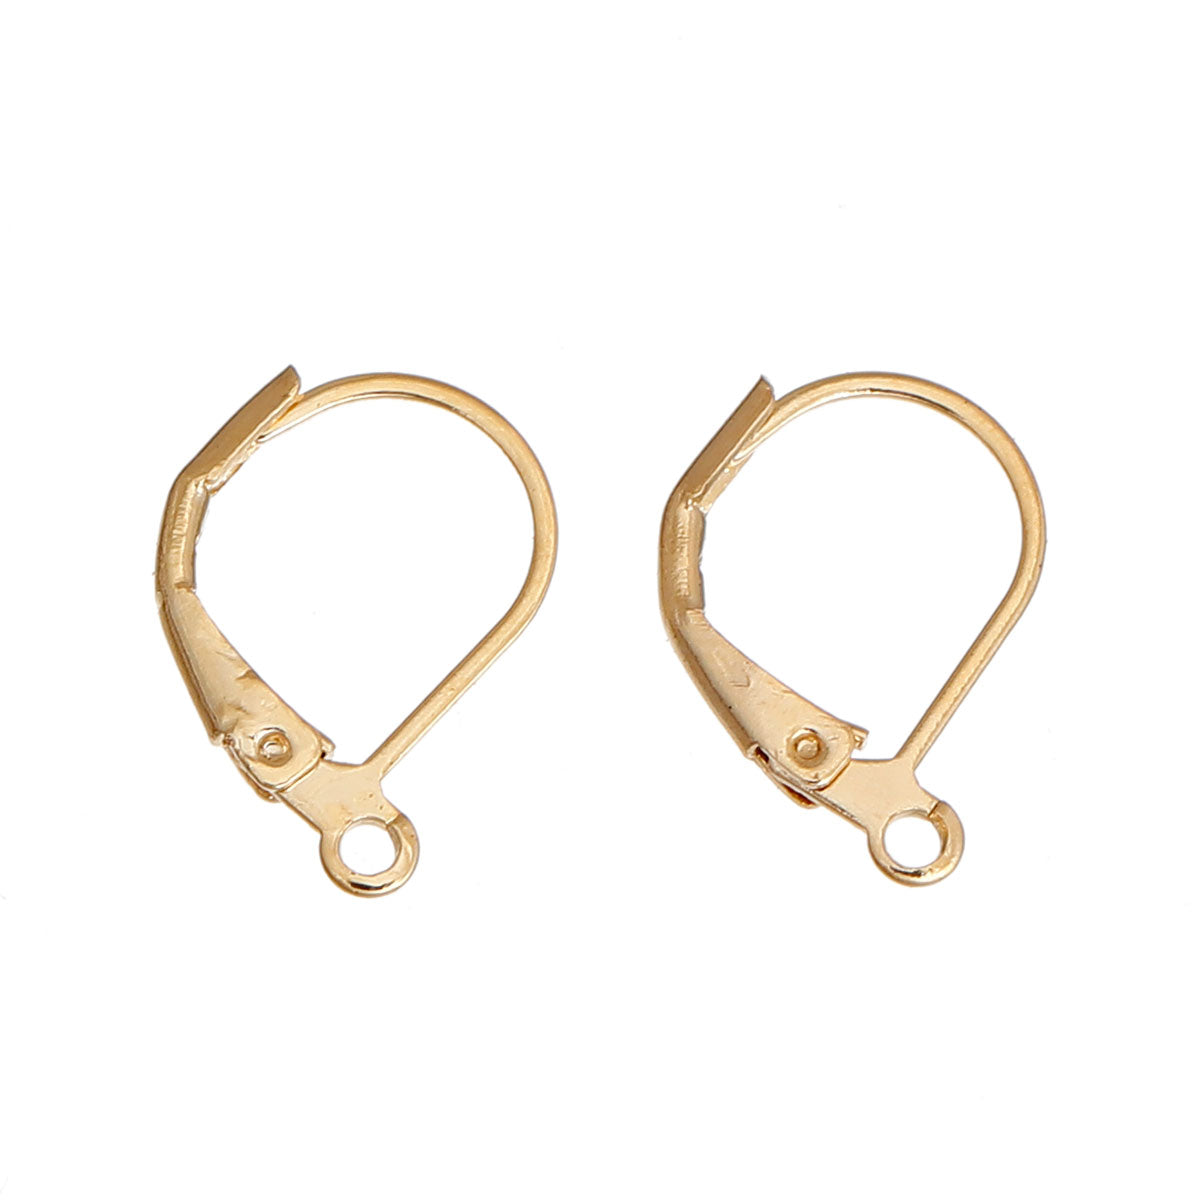 22K Gold Plated Leverback Earrings 13x11mm - 50 Earring Findings